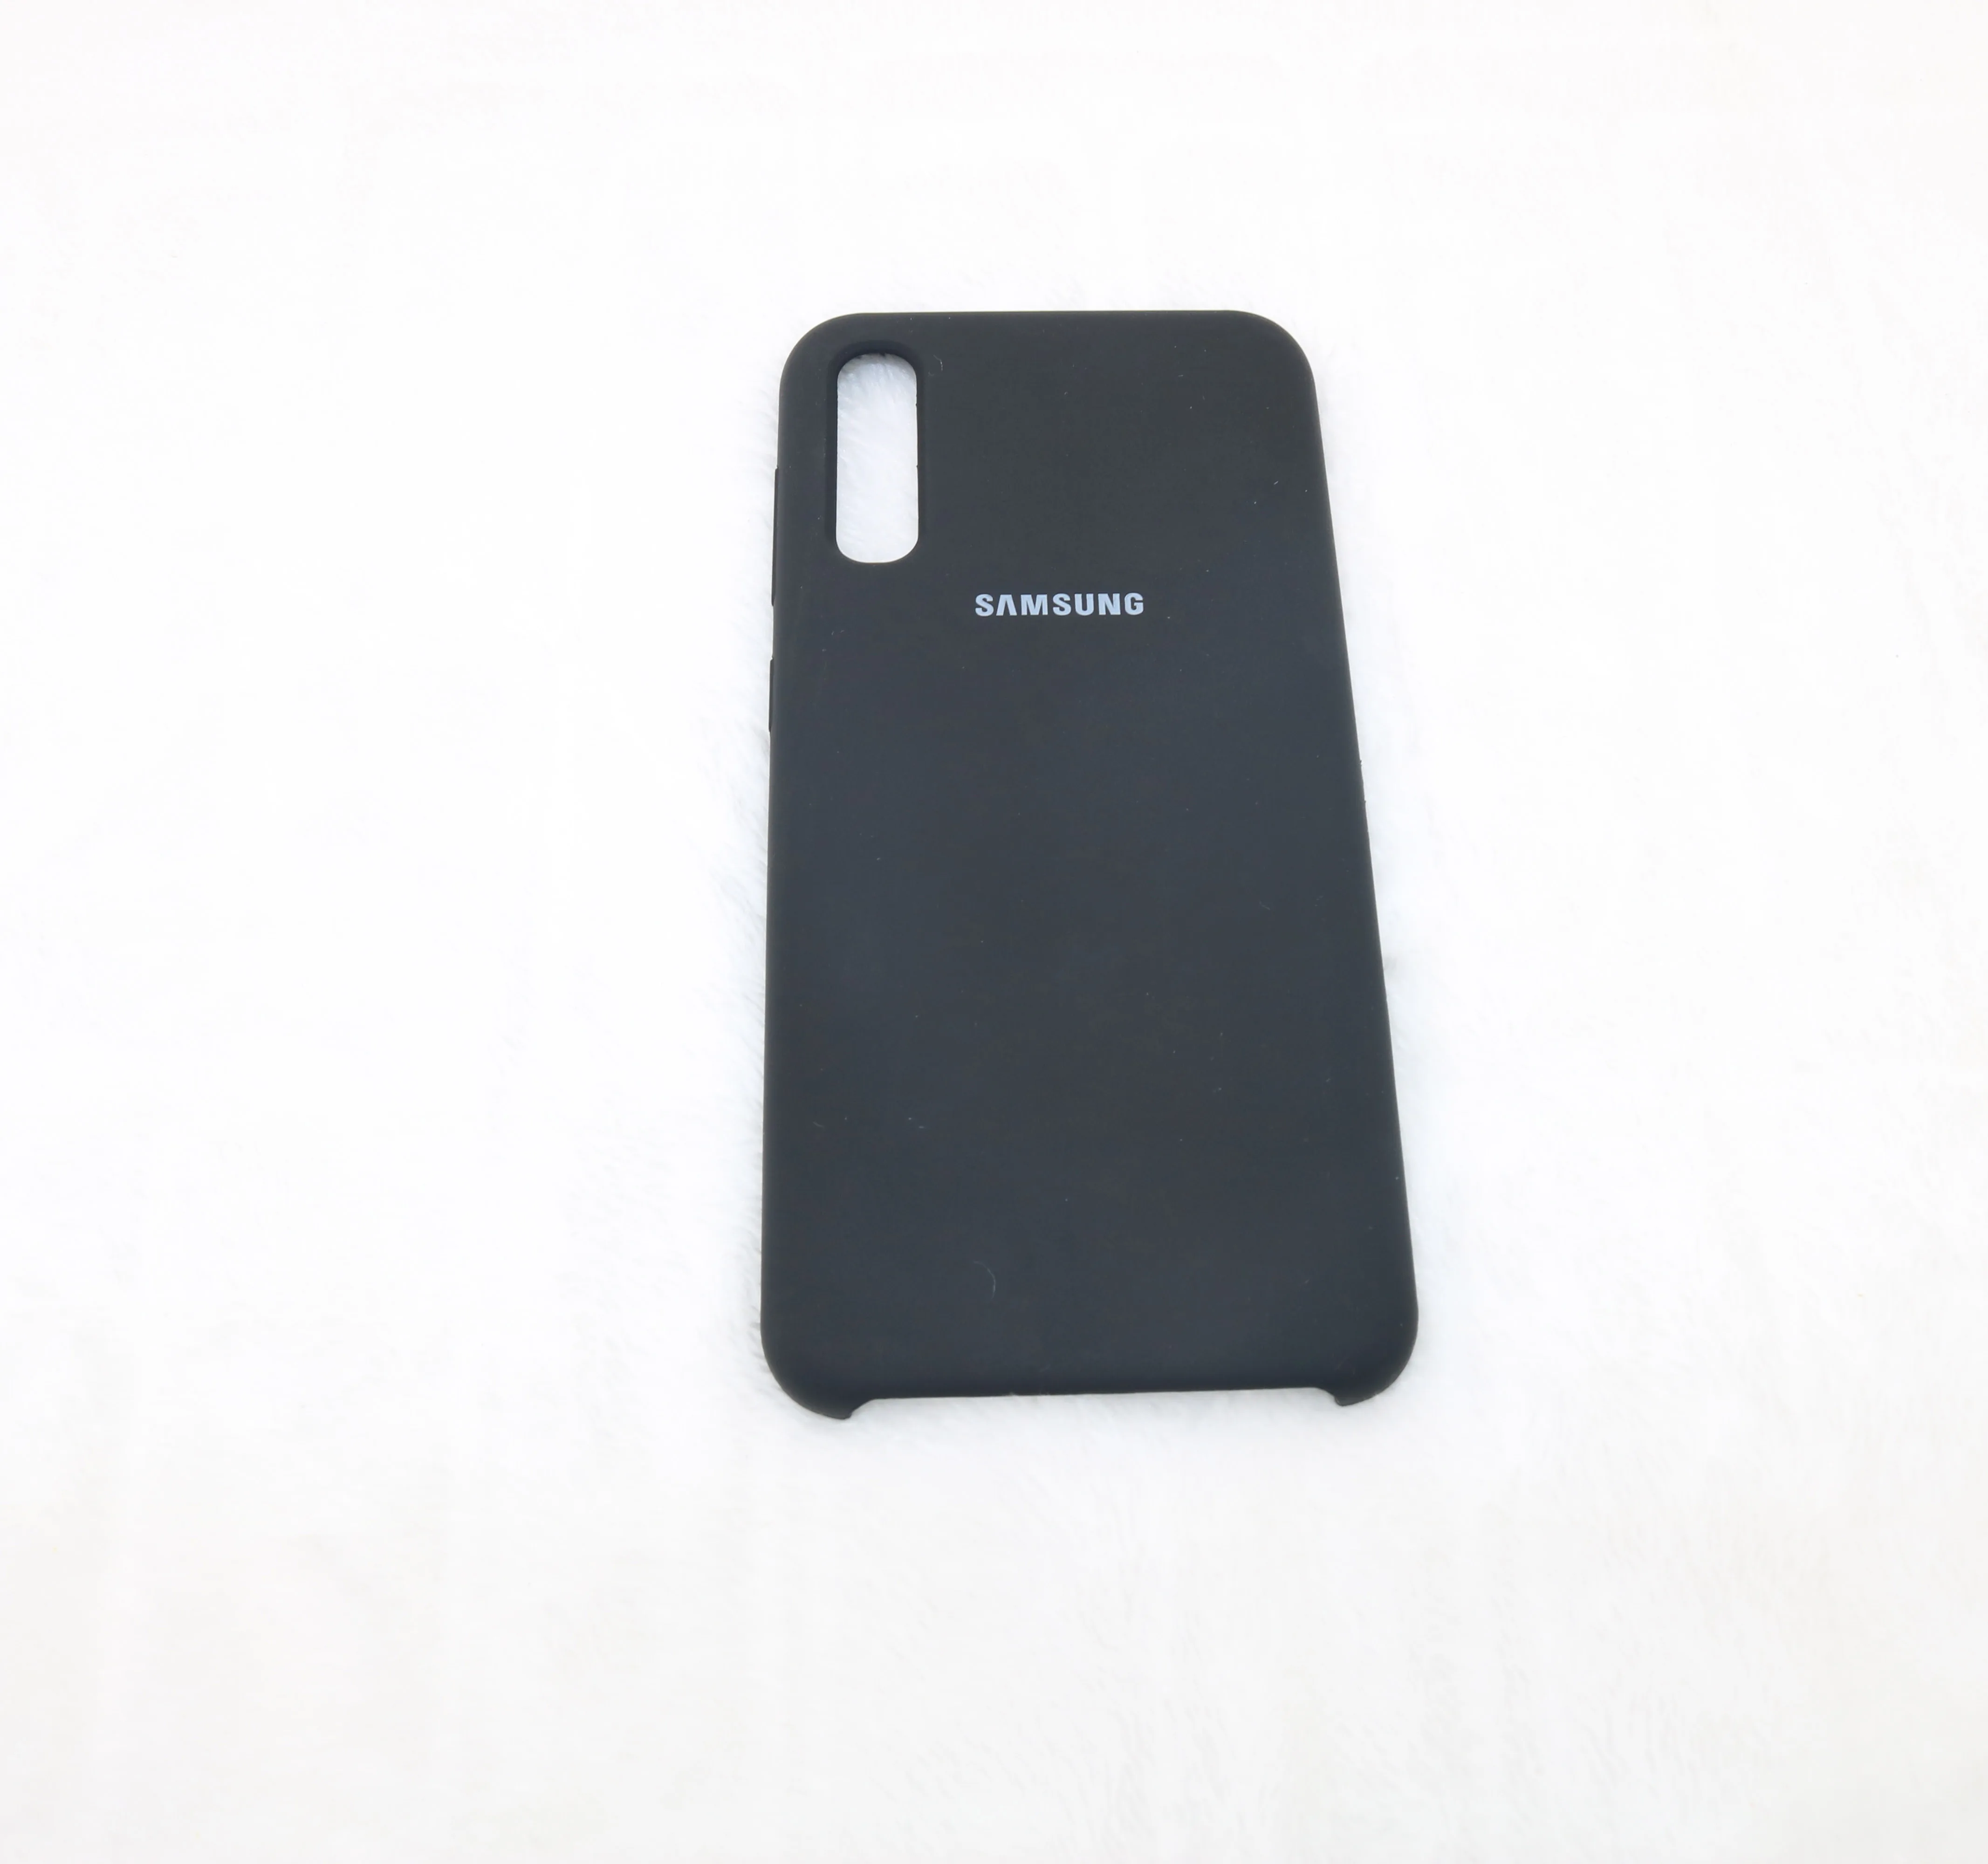 Для samsung Galaxy A50 чехол силиконовый Рождественский задняя крышка чехол для телефона для samsung A30 A20 A10 A505 A505F мягкий чехол 6,4 - Цвет: Black